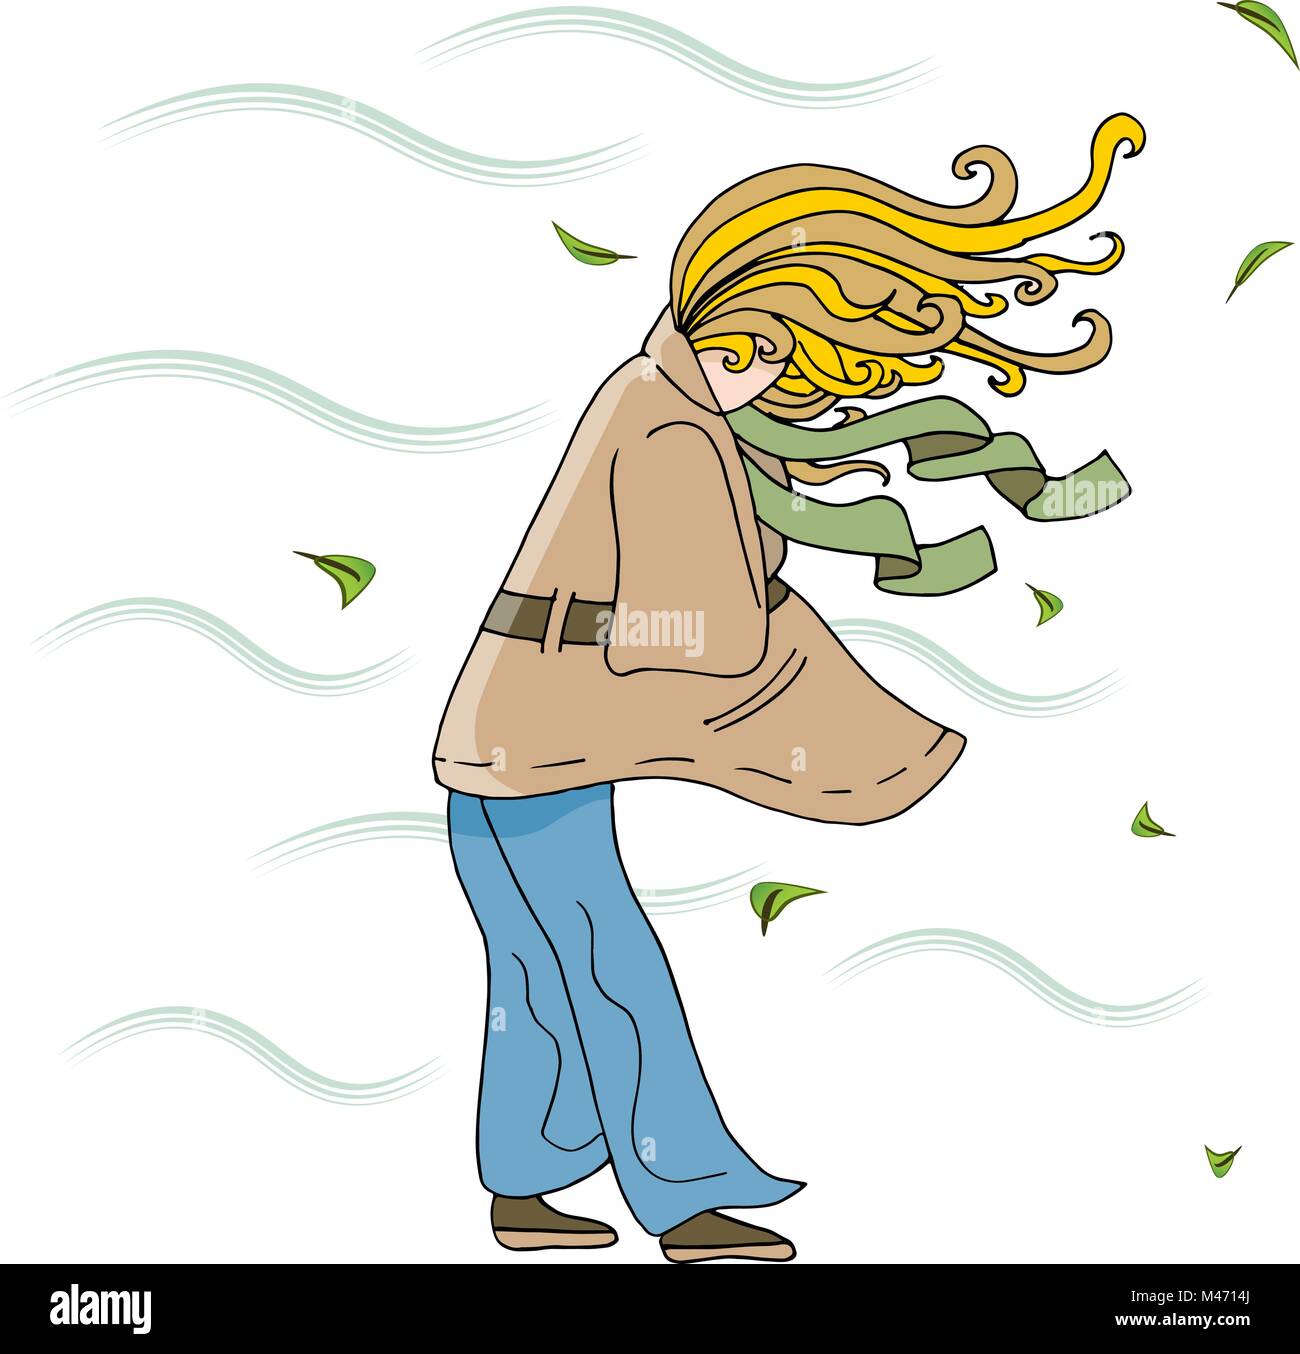 Ein Bild von einer Frau zu Fuß außerhalb an einem windigen Tag Cartoon. Stock Vektor